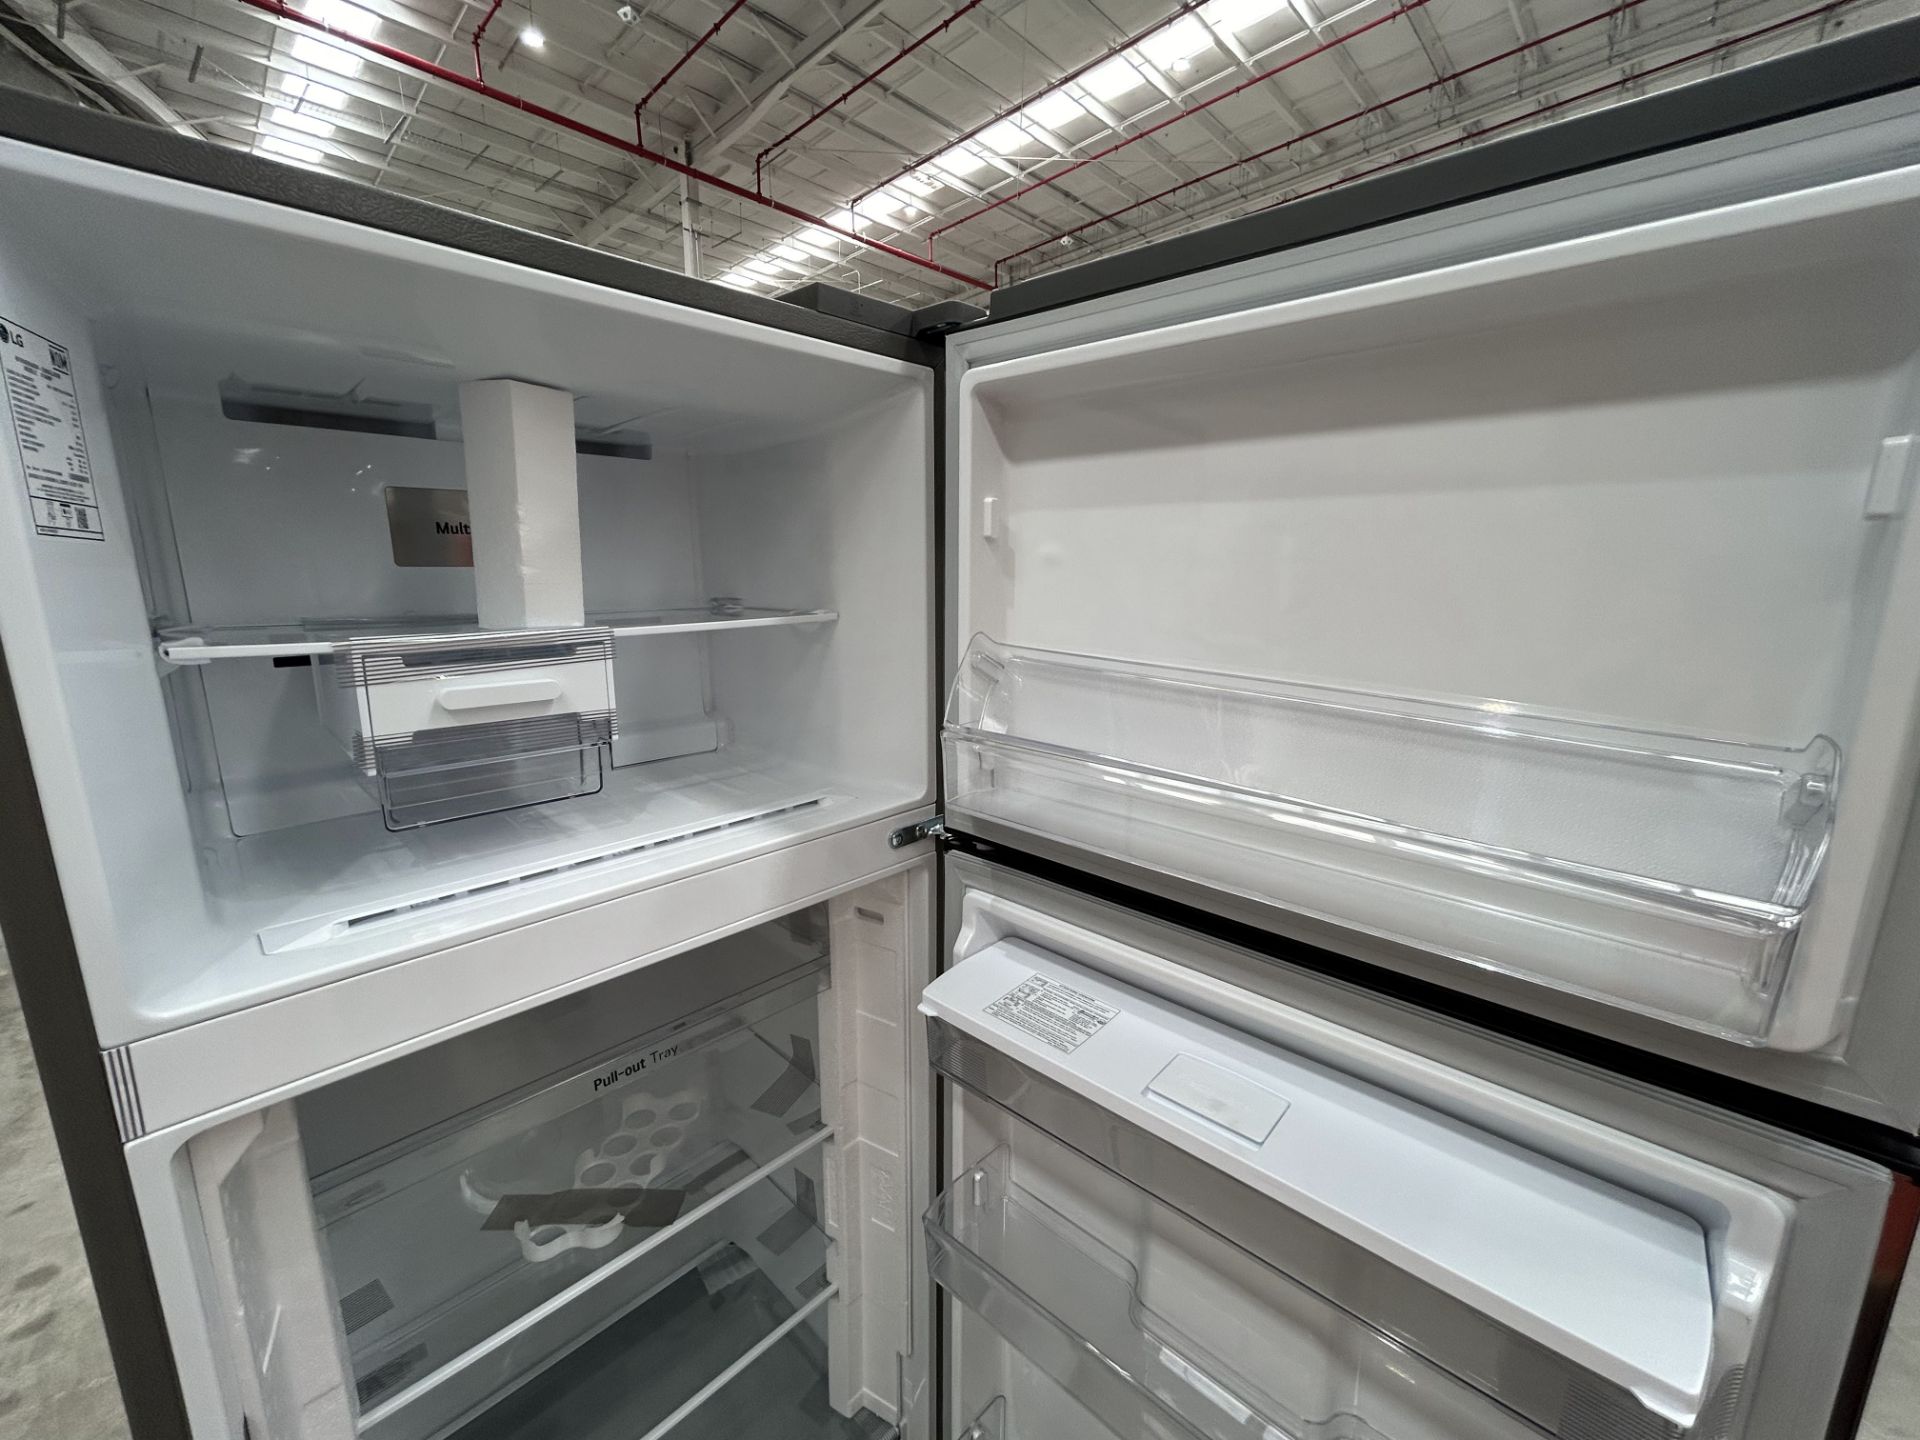 1 refrigerador con dispensador de agua Marca LG, Modelo VT40WP, Serie 2X898, Color GRIS (No se aseg - Image 5 of 7